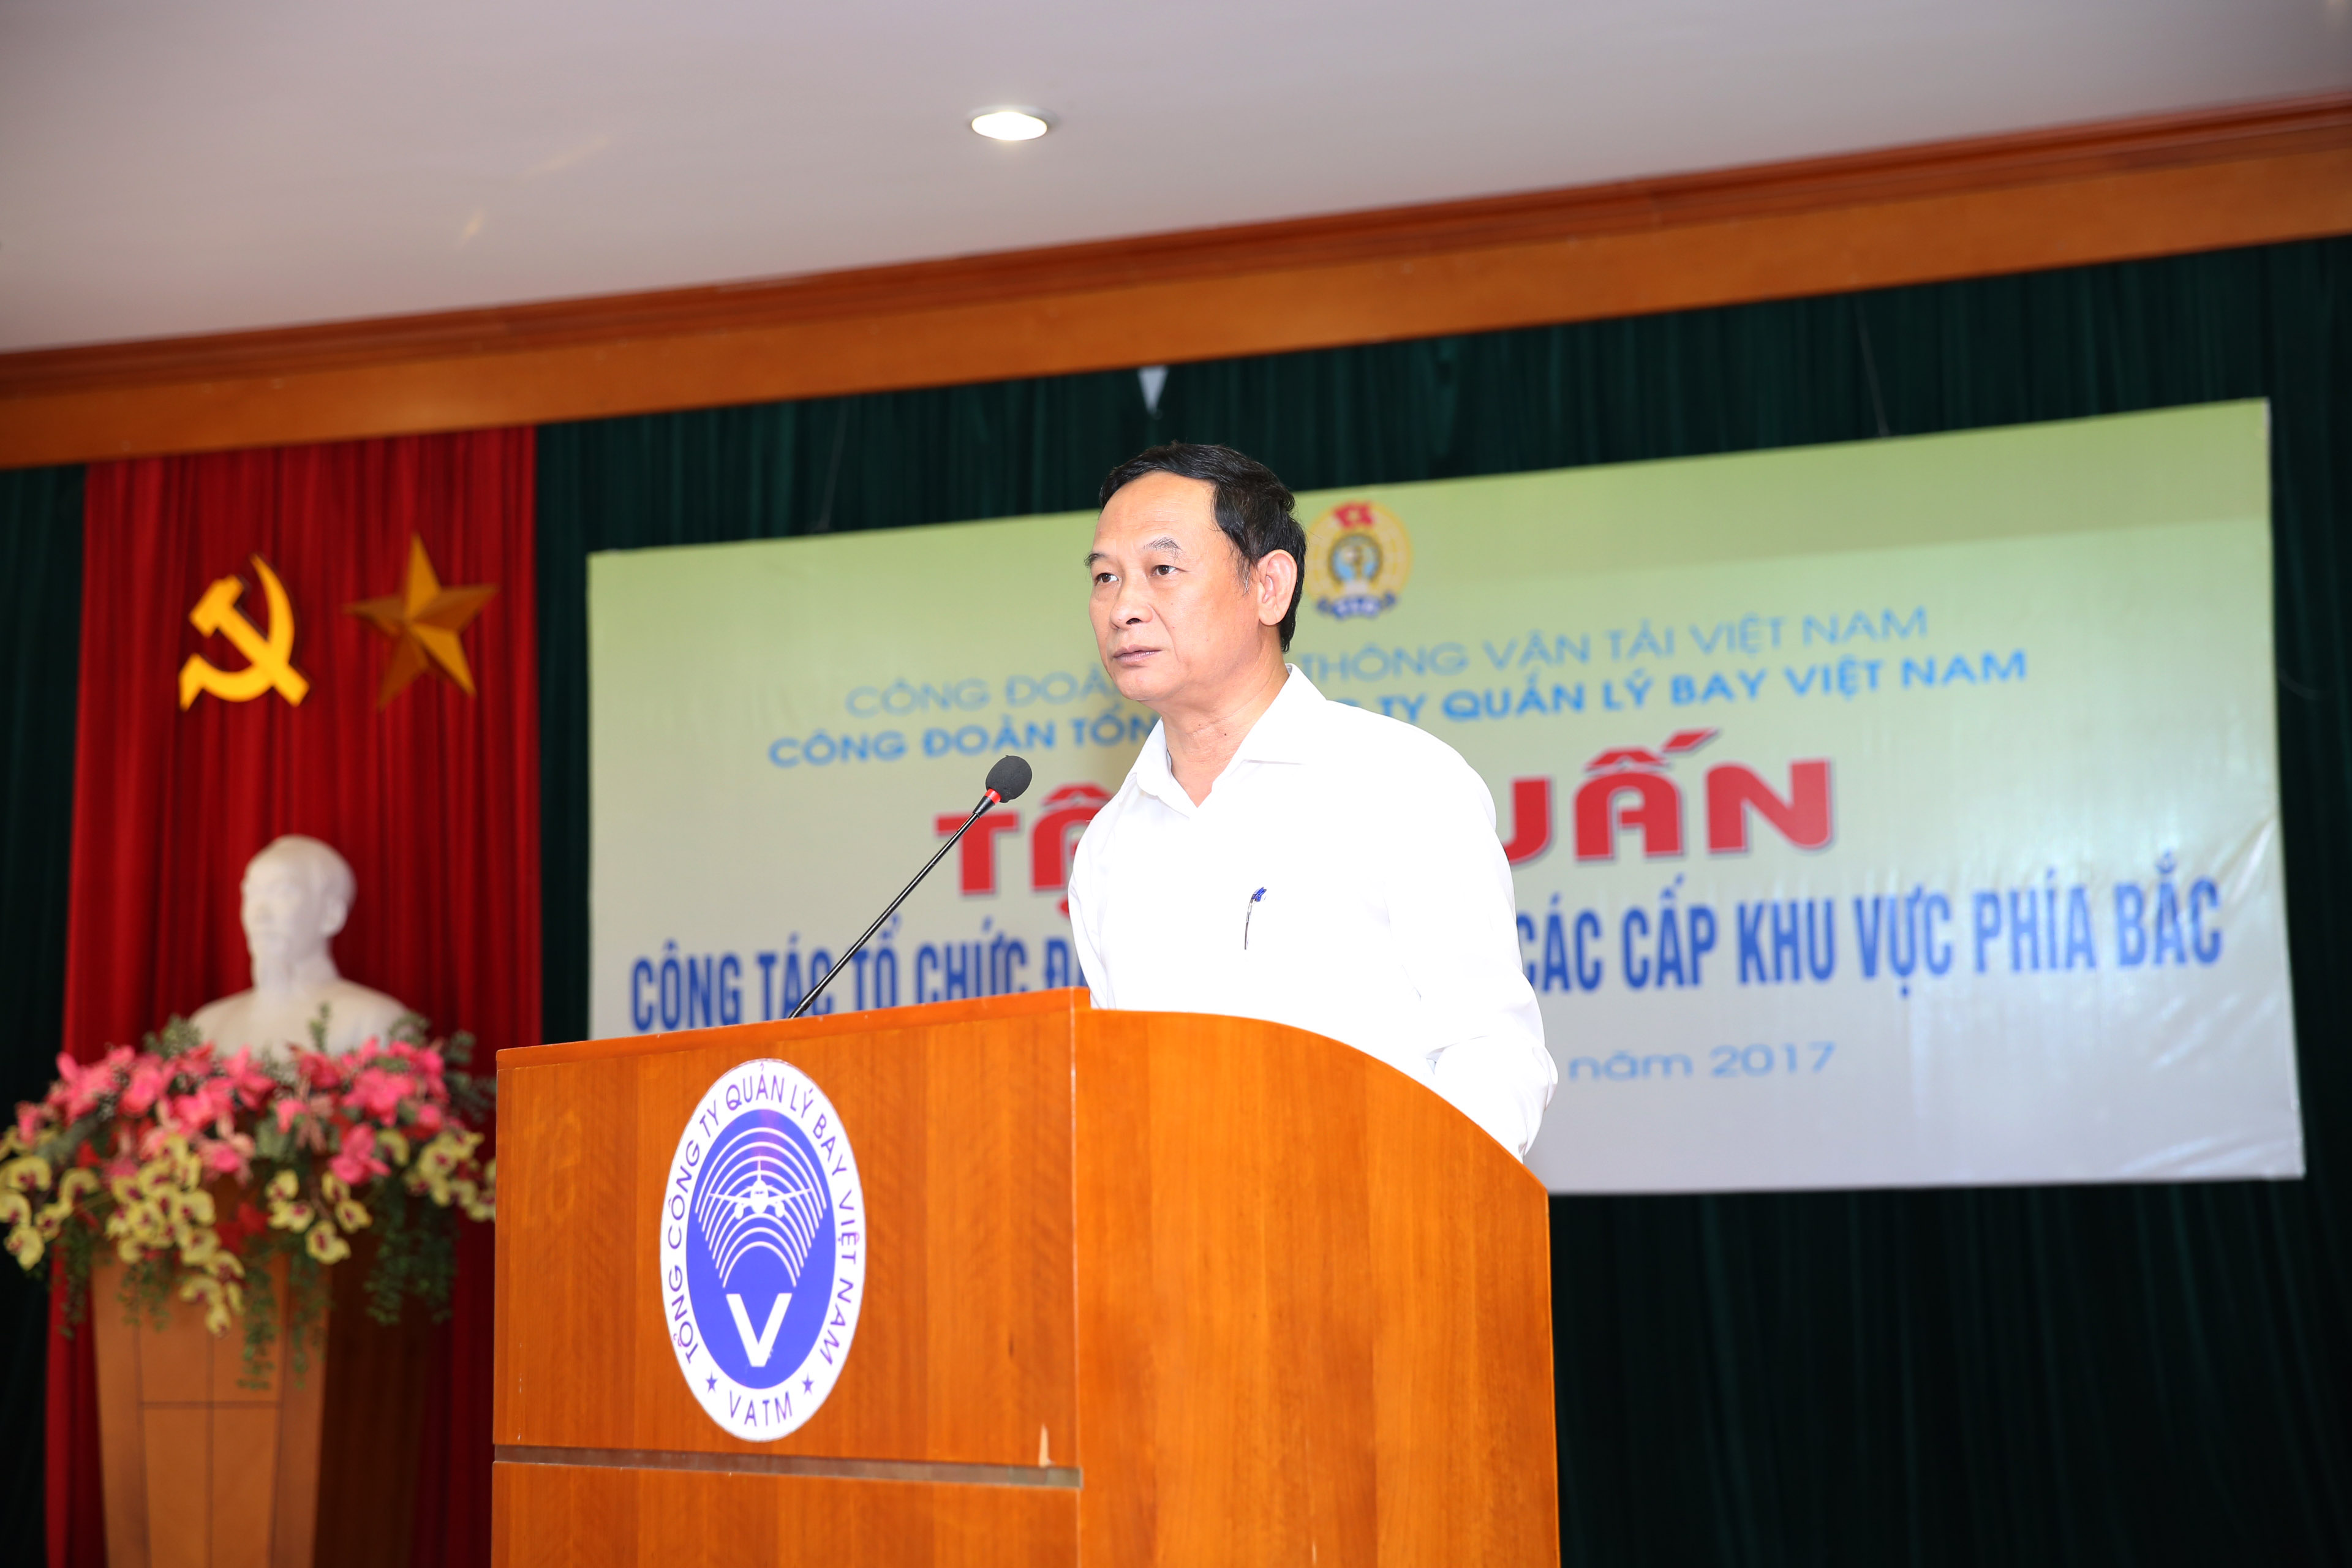 Công đoàn Tổng công ty Quản lý bay Việt Nam tập huấn công tác tổ chức Đại hội công đoàn các cấp